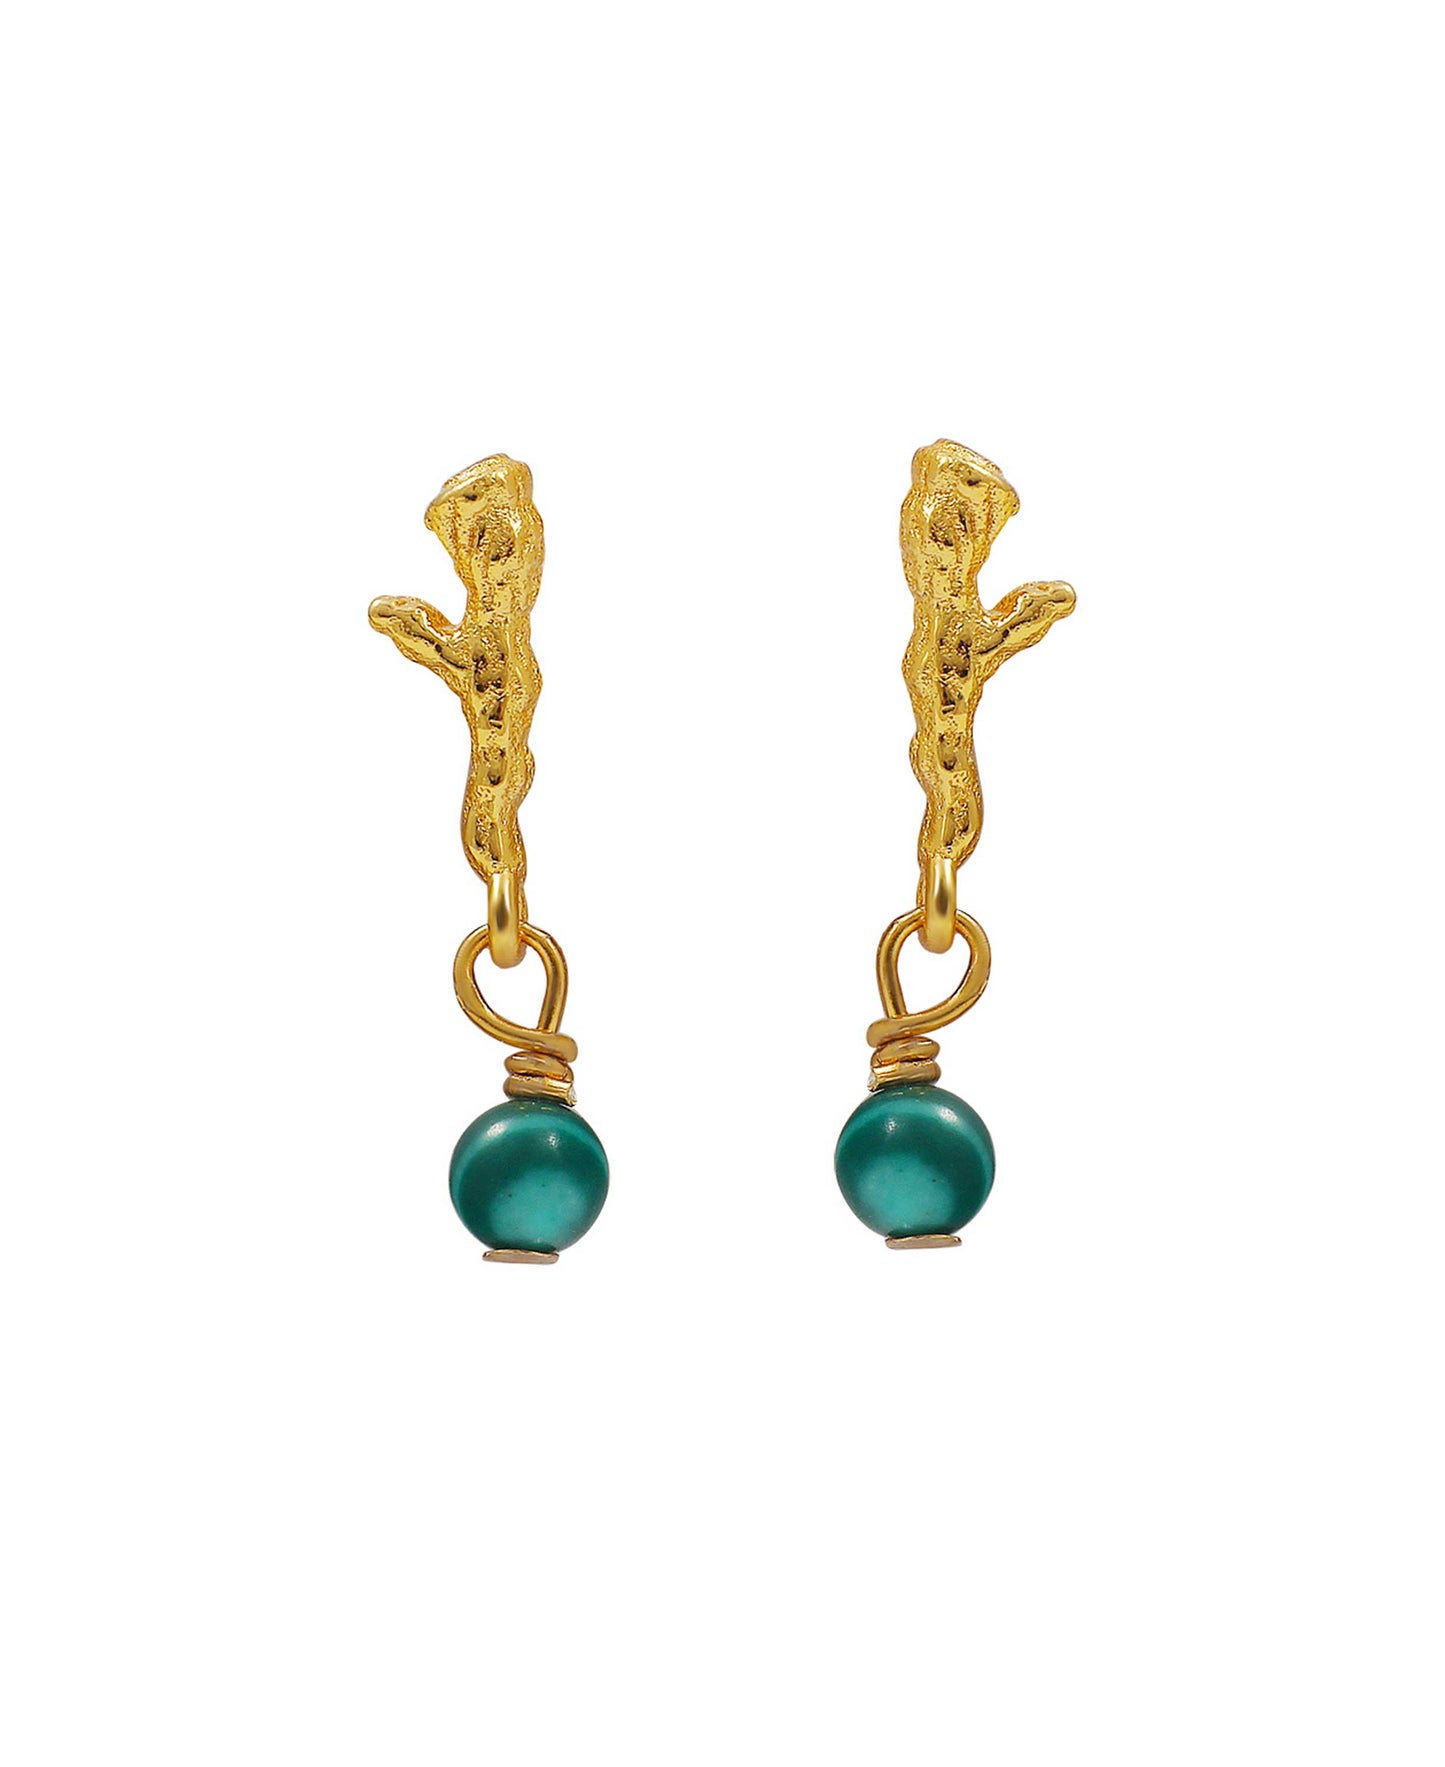 Olivine earrings